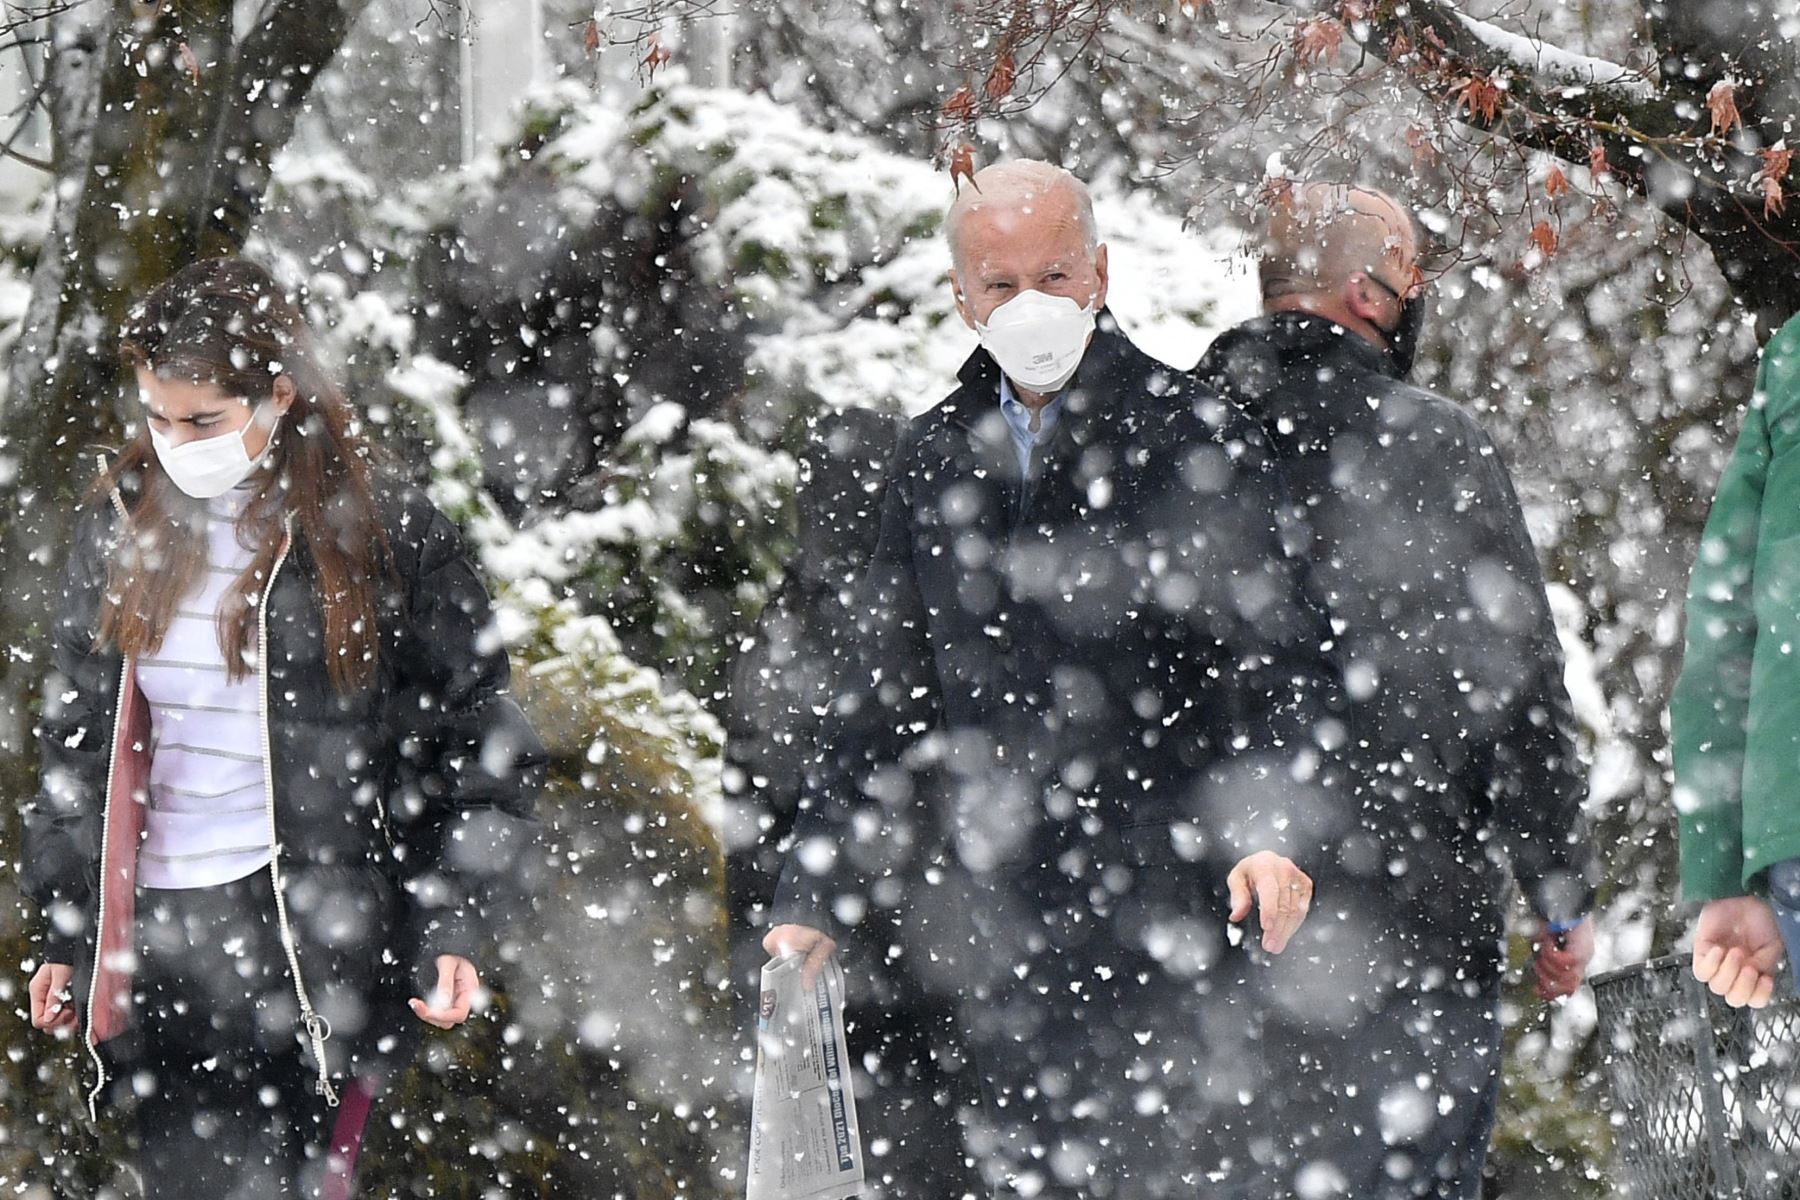 El presidente de los Estados Unidos, Joe Biden, se dirige a su vehículo en la nieve con su nieta Natalie Biden, después de asistir a la misa en Saint Joseph en la iglesia Brandywine en Wilmington, Delaware. Foto: AFP